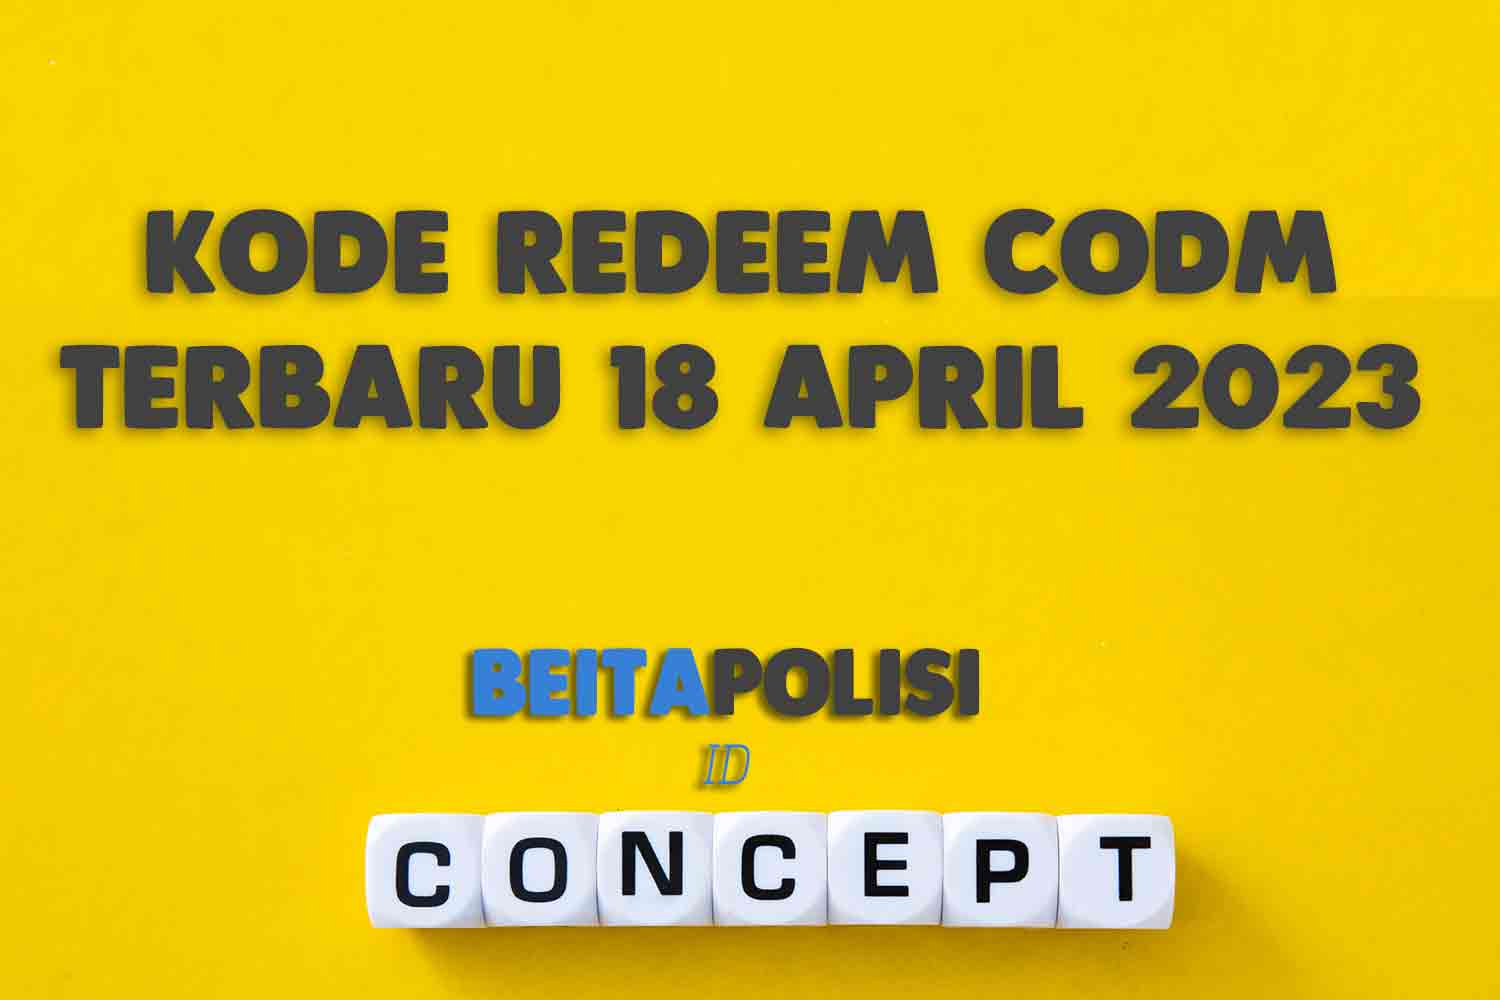 Kode Redeem Codm Terbaru 18 April 2023